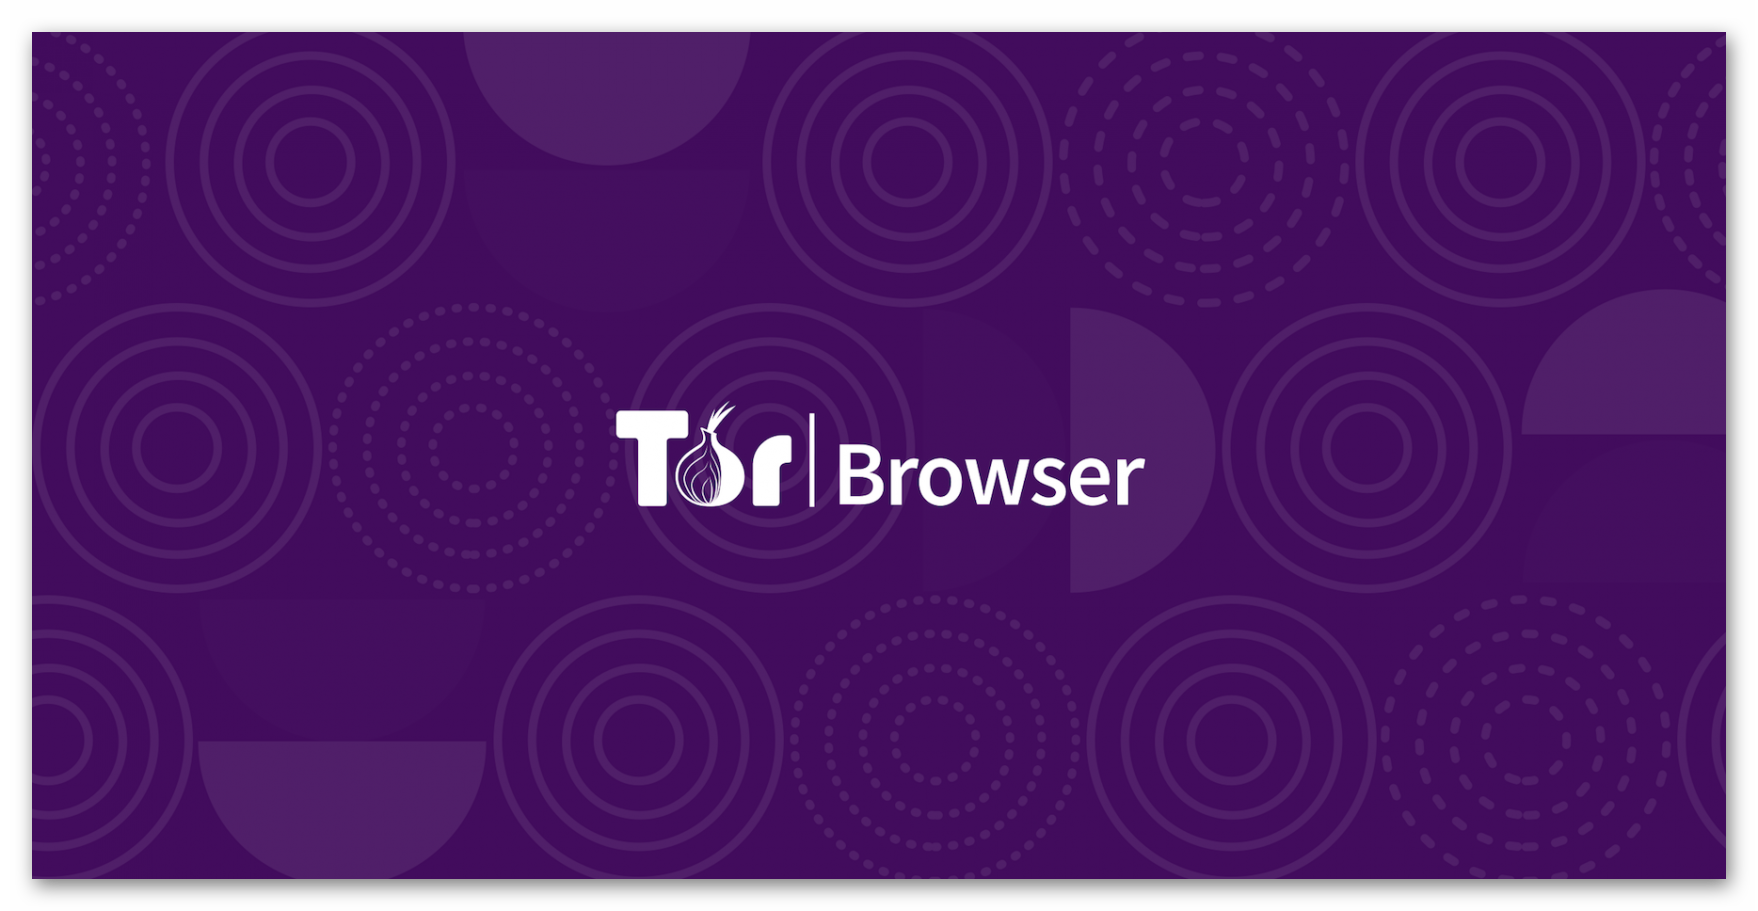 в россии tor browser разрешен ли